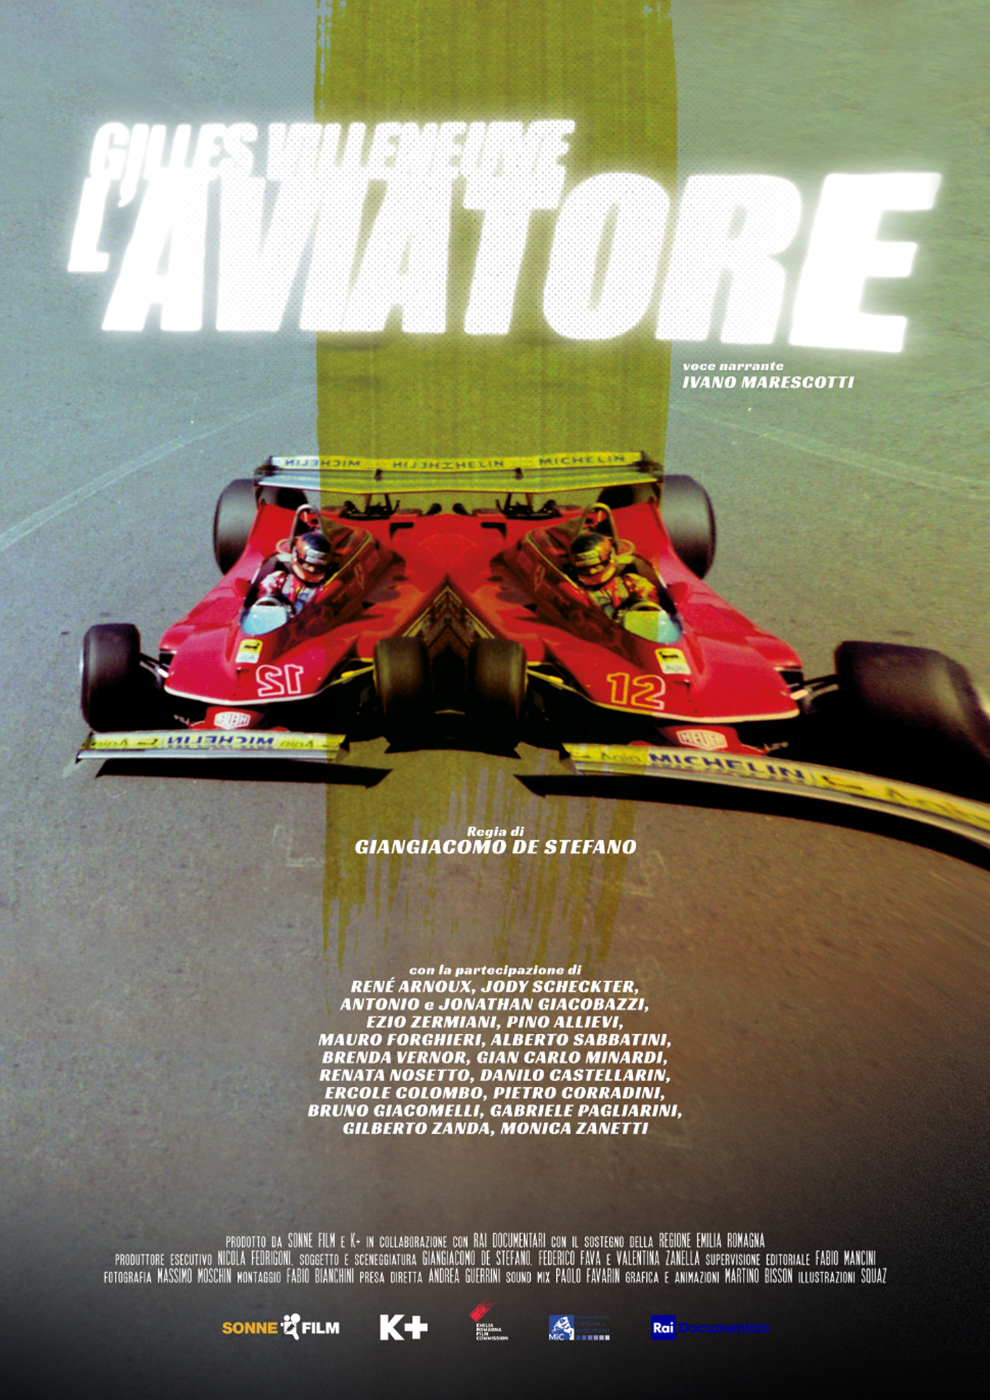 Locandina di Gilles Villeneuve, L'Aviatore 